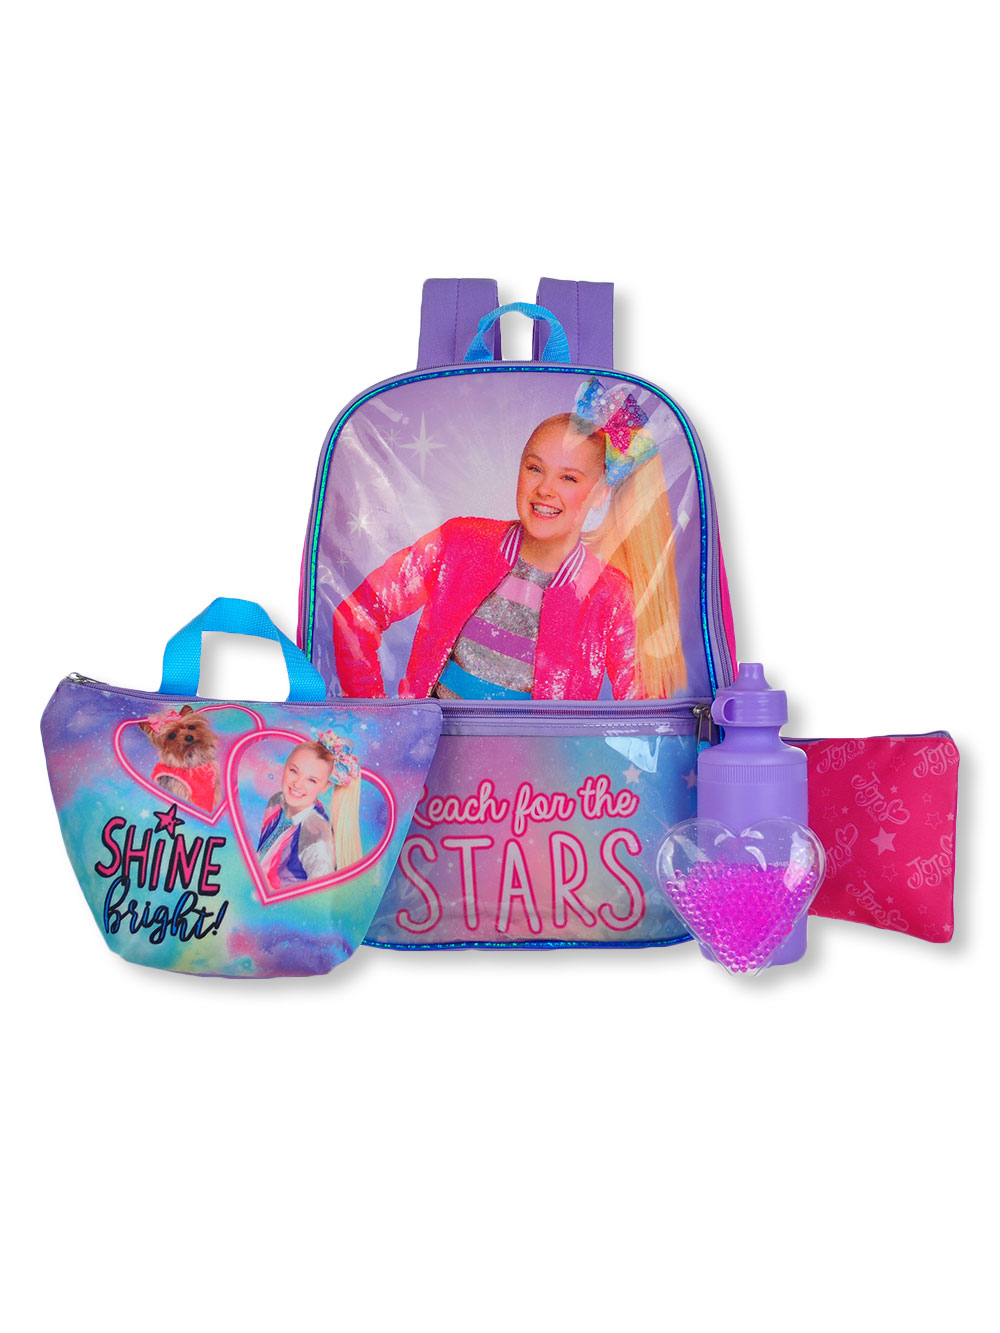 Barbie 5-Piece Backpack & Lunch Bag Set